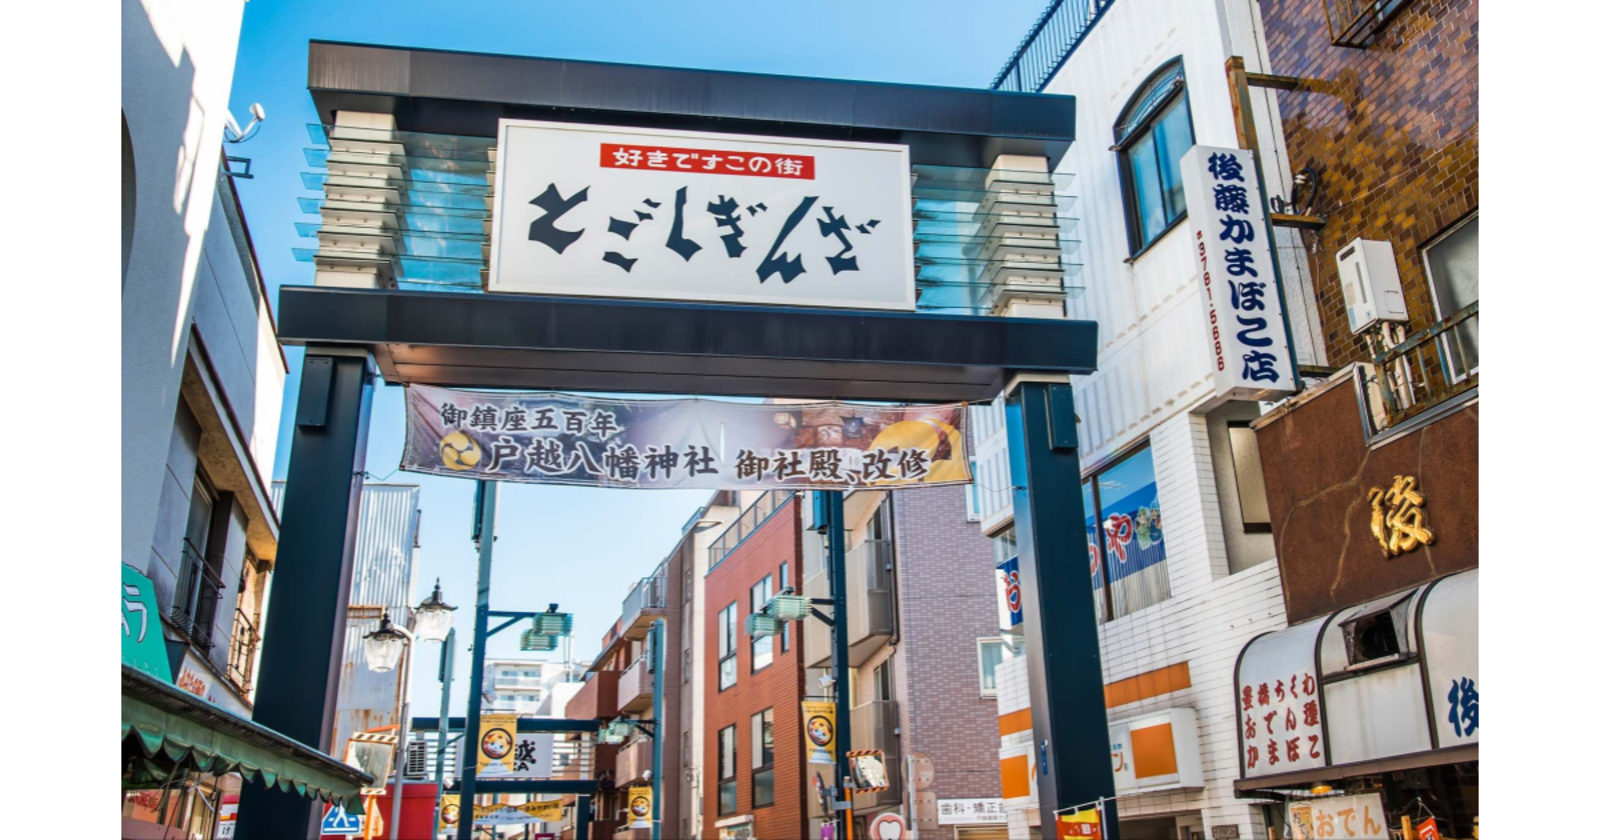 東日本一長い商店街「戸越銀座商店街」歴史散歩と安くておいしいB級グルメの食べ歩きを楽しみます♪